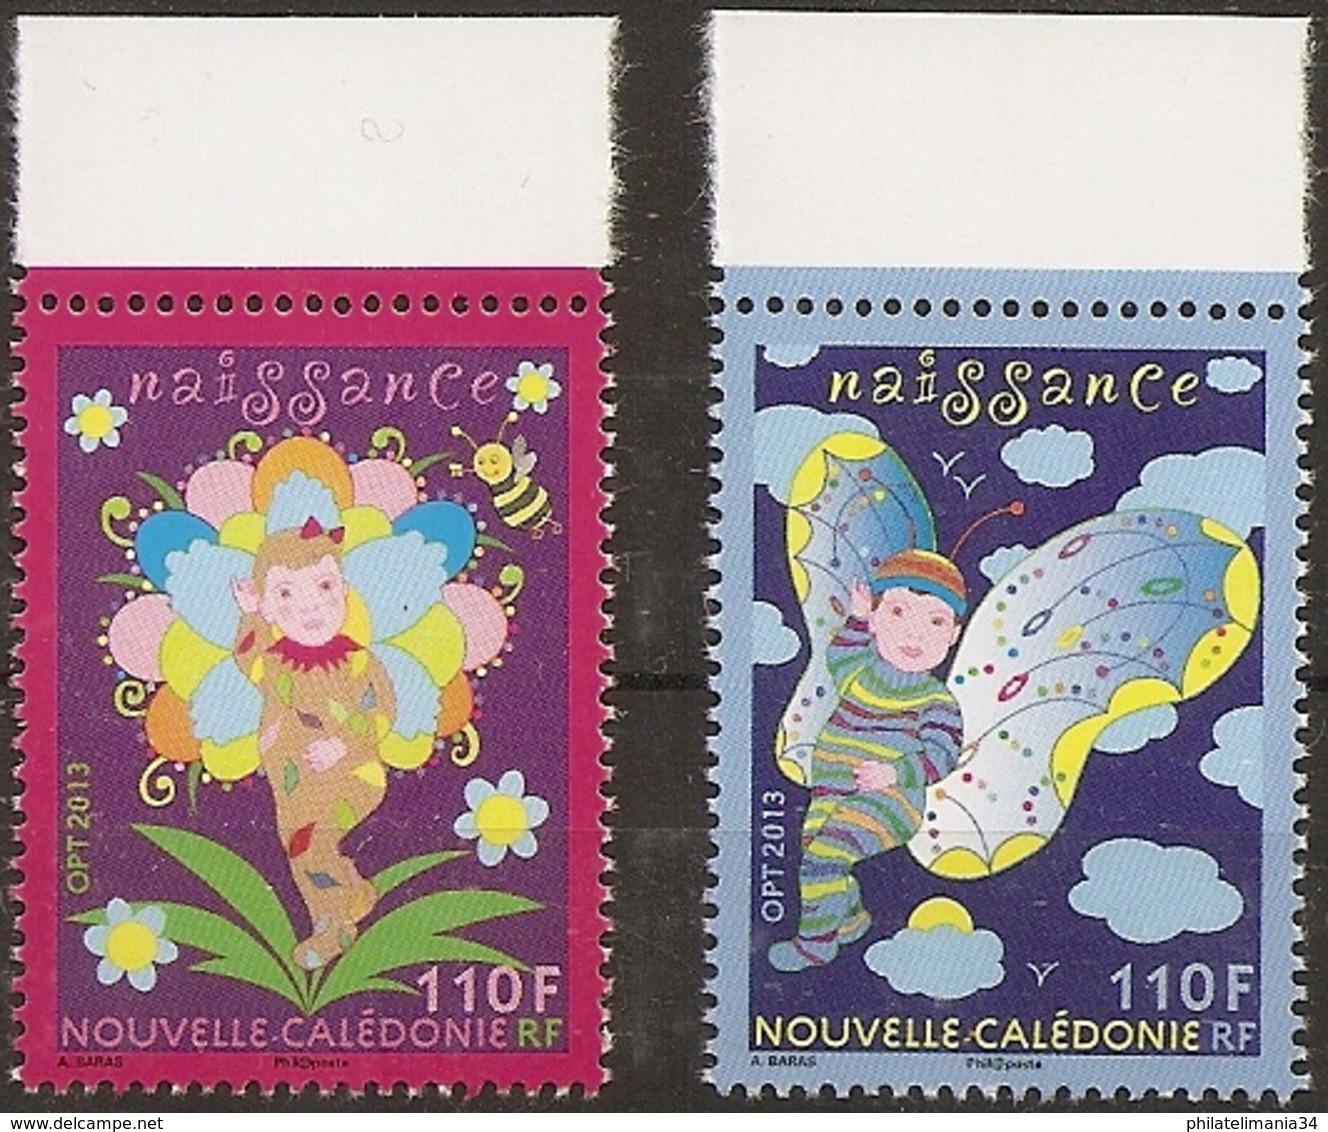 Nouvelle-Calédonie 2013 - Série Naissance - Unused Stamps